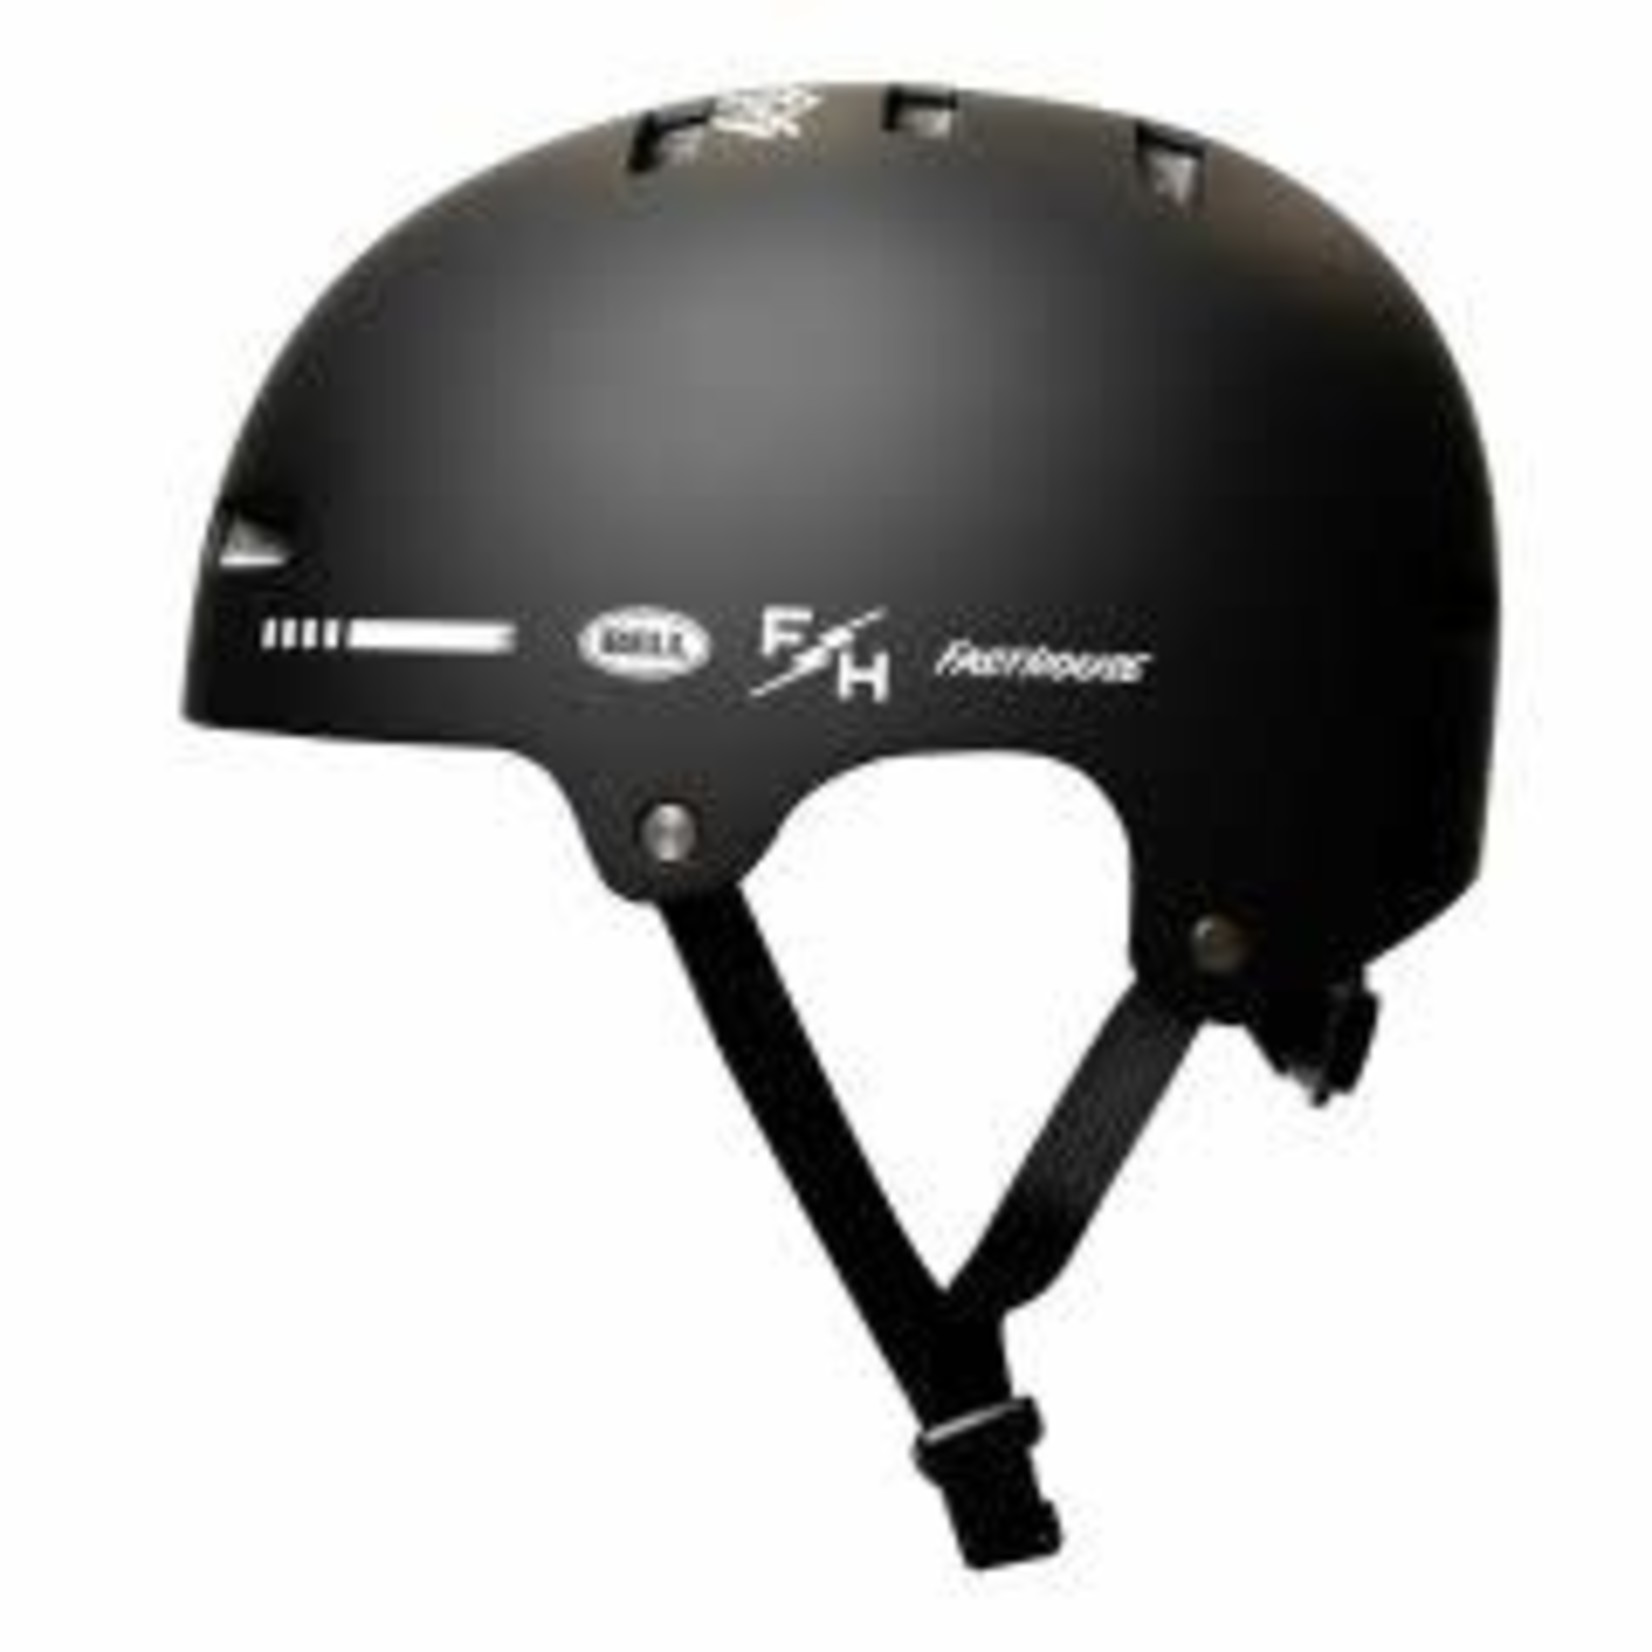 BELL Mountain Bike Fasthouse Helmet, Black/White